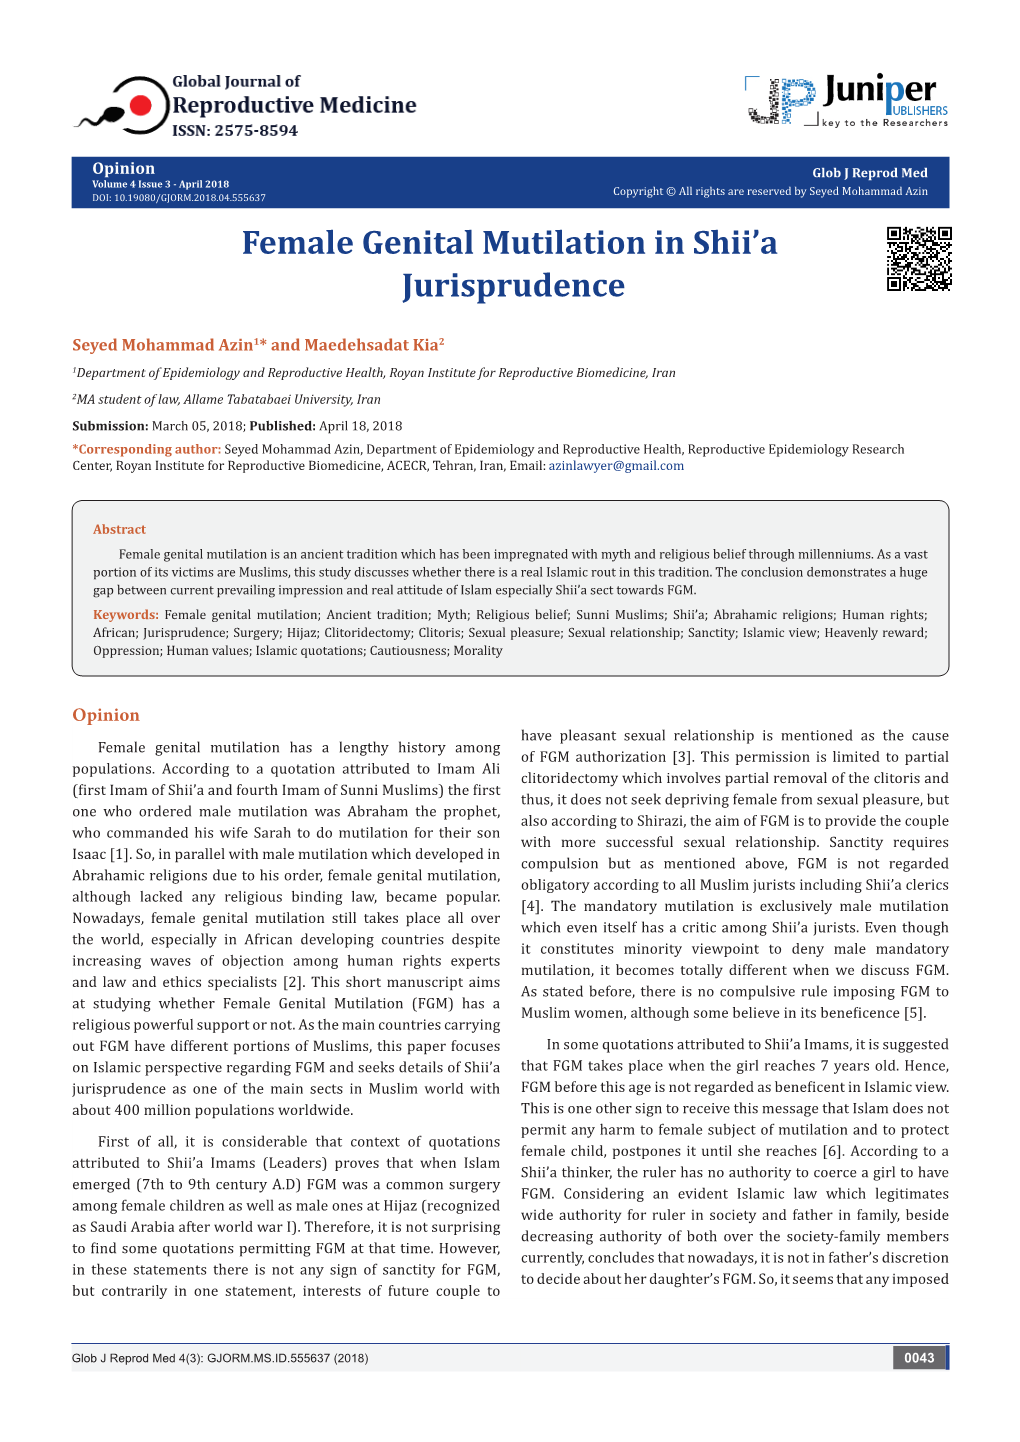 Female Genital Mutilation in Shii'a Jurisprudence